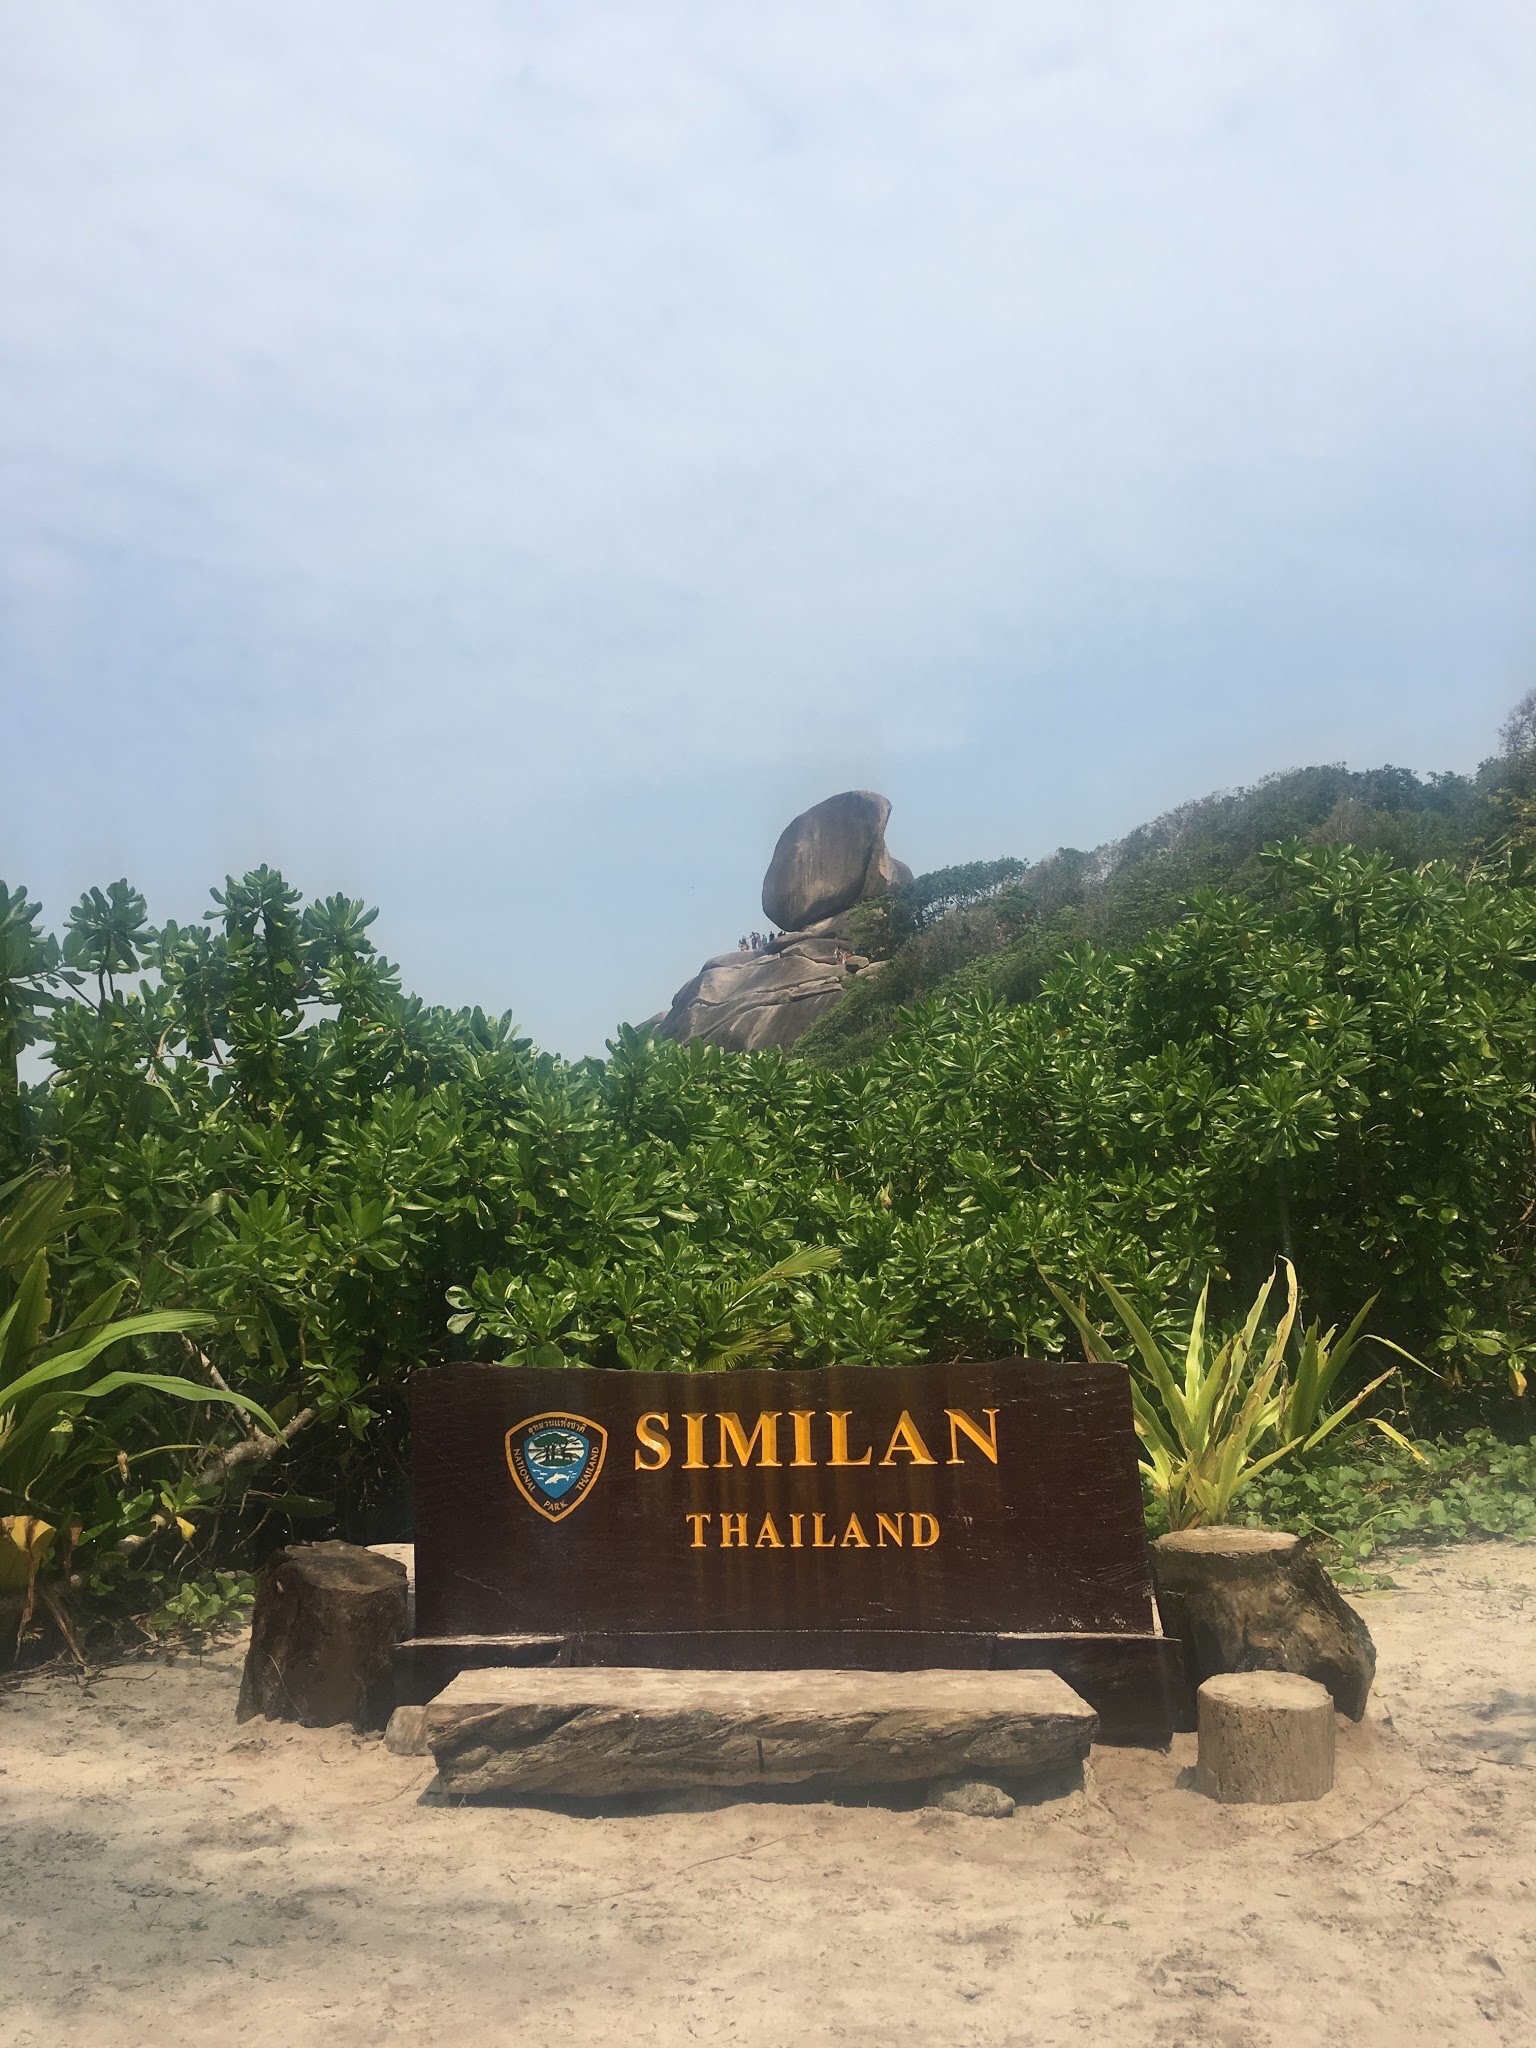 îles Similan en Thailande, panneau d'entrée et célèbre rocher en équilibre 